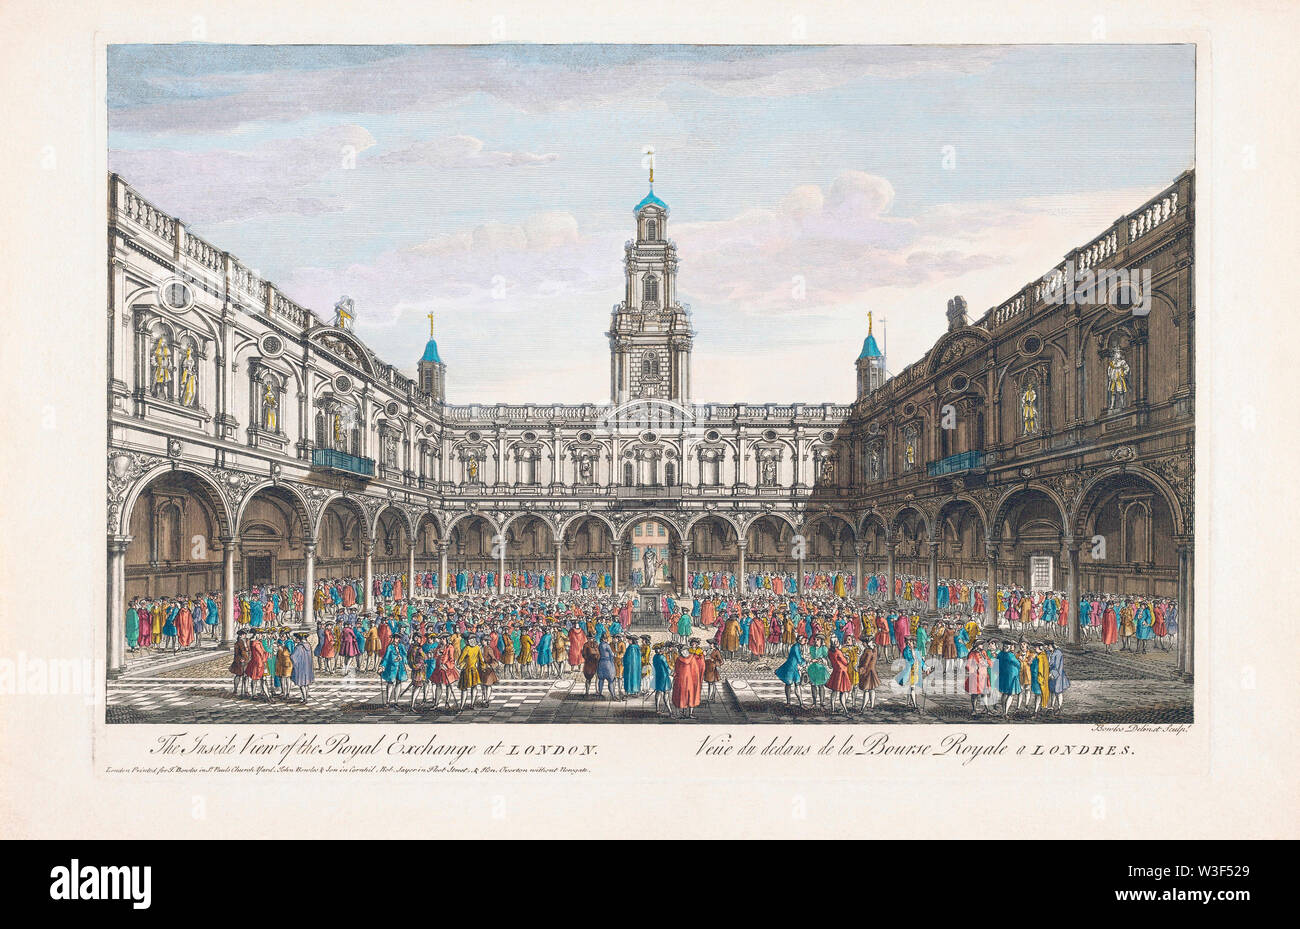 Die Innenansicht des Royal Exchange in London, England. Veue du dedans de la Bourse Royale ein Londres. Nach einer Hand farbige Gravur veröffentlicht ca. 1750. Stockfoto